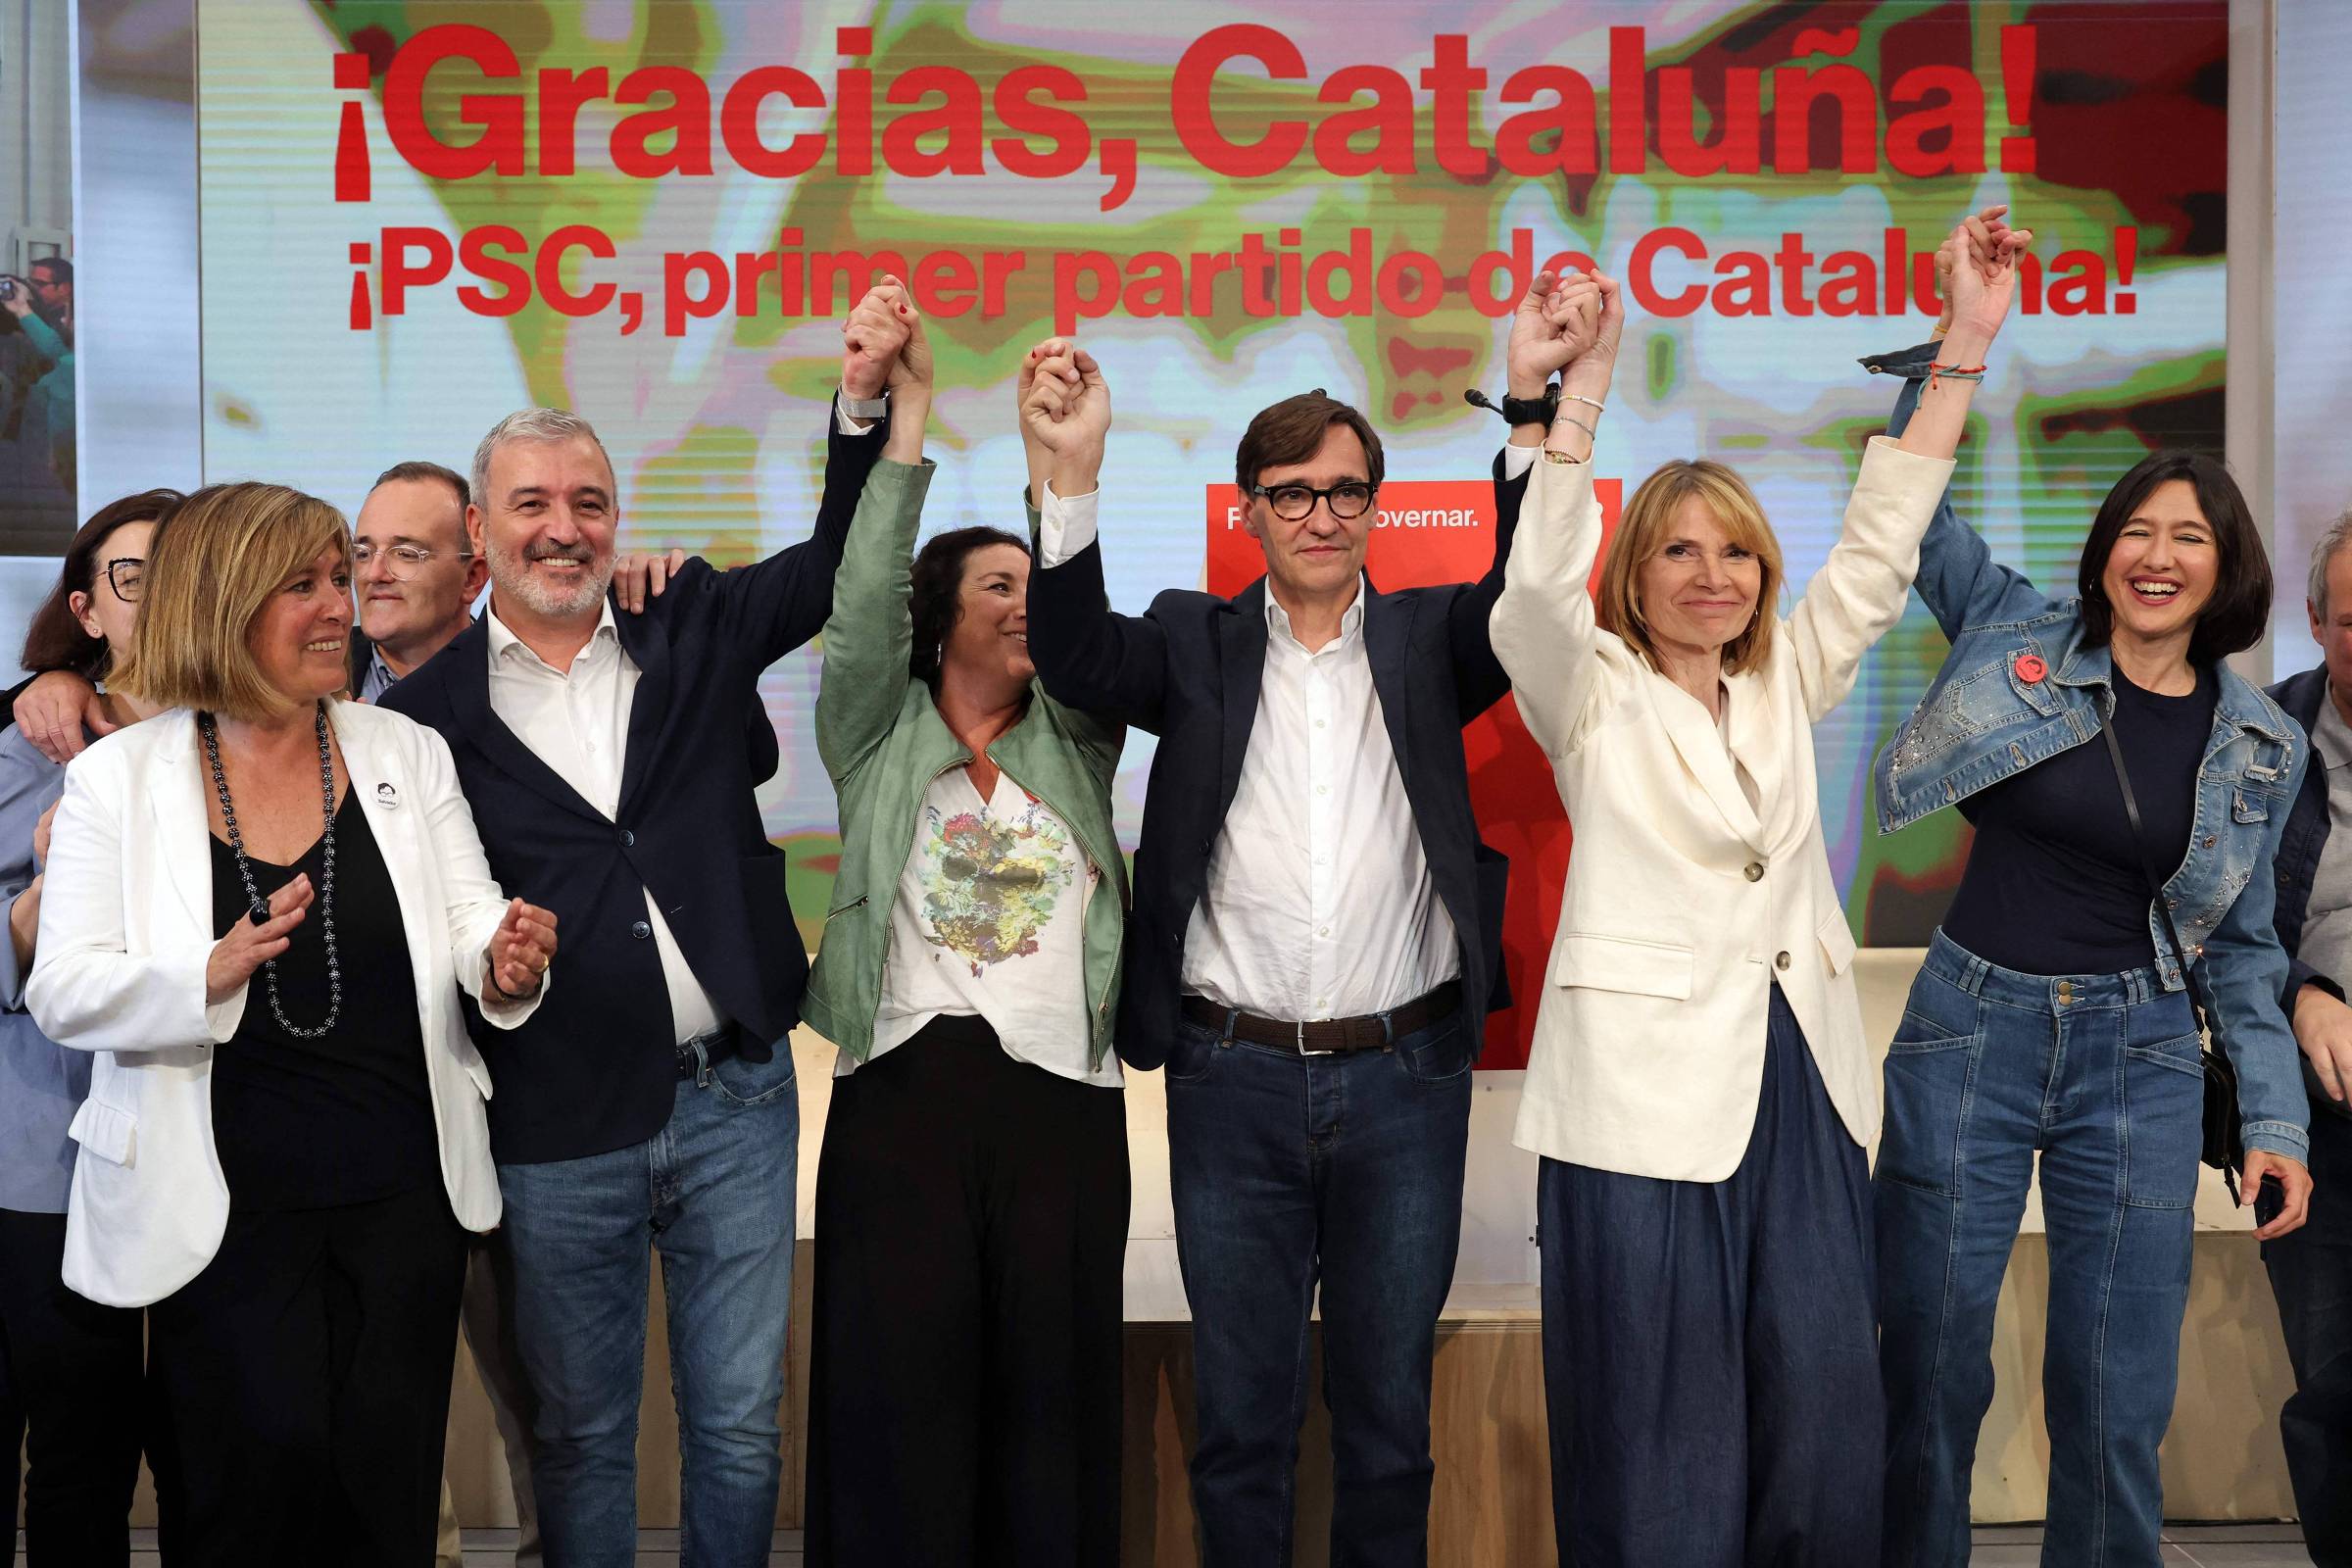 Socialistas vencem eleições catalãs e ameaçam governo separatista